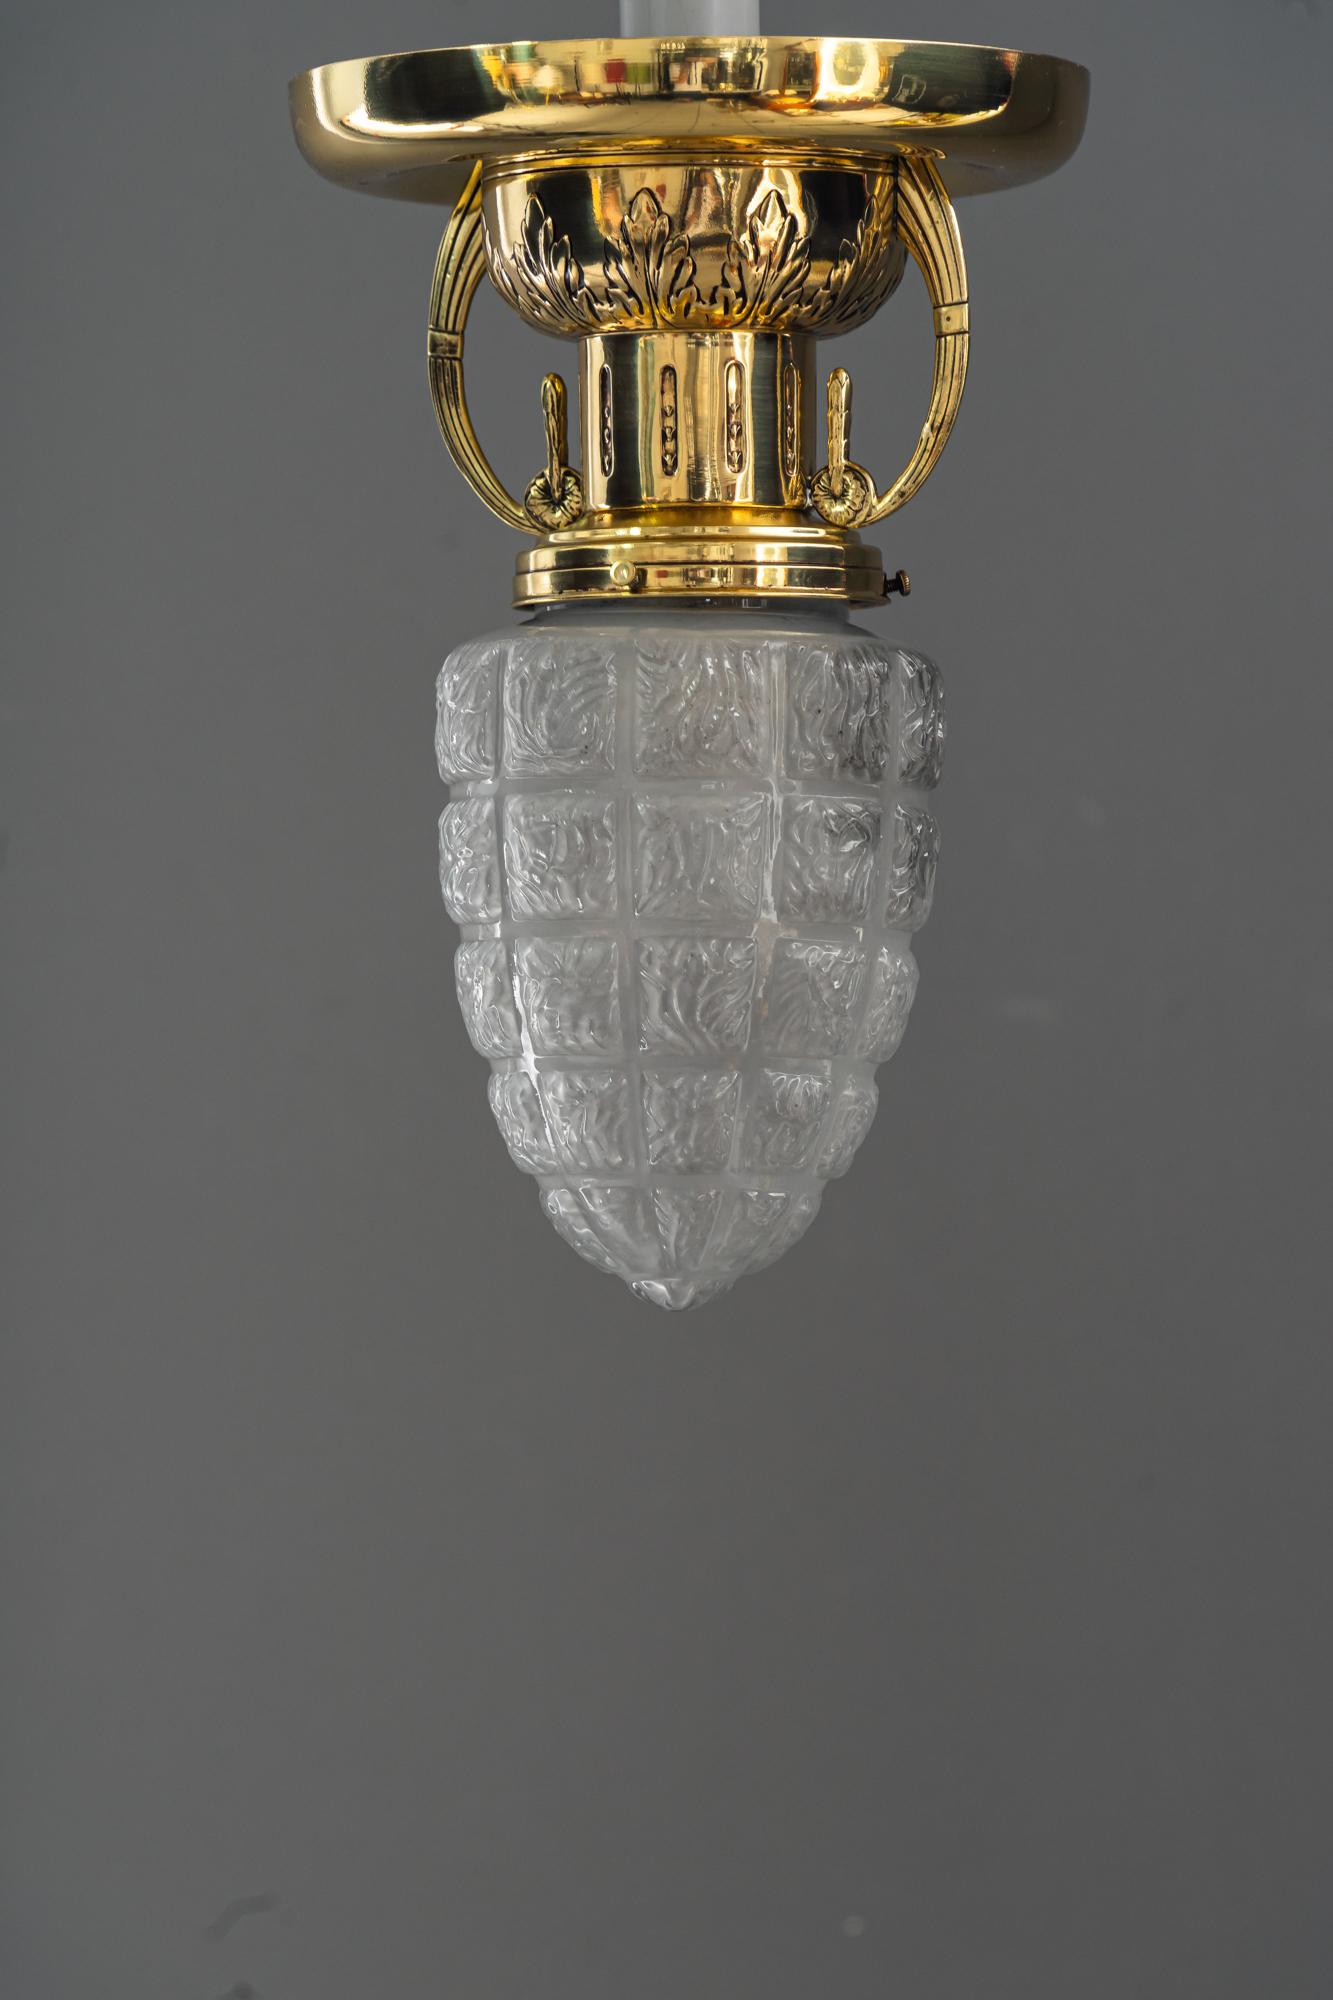 2 Art Deco Deckenlampen mit original Glasschirmen Wien um 1920er Jahre 
Messing poliert und emailliert
Original Glasschirme